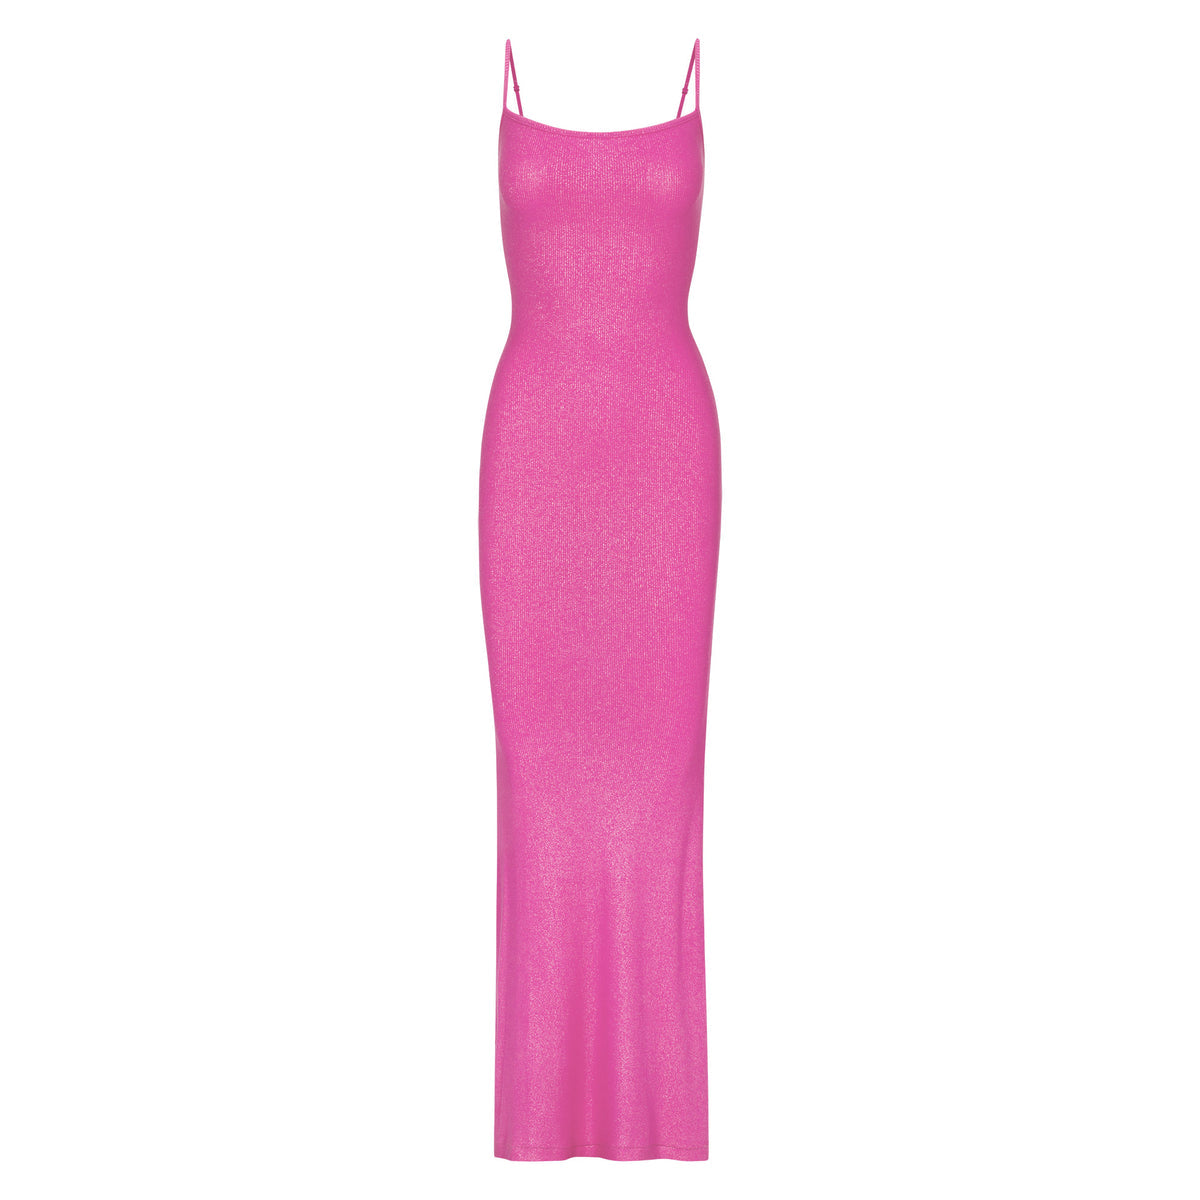 Soft Lounge Shimmer Slip Dress in Fuchsia